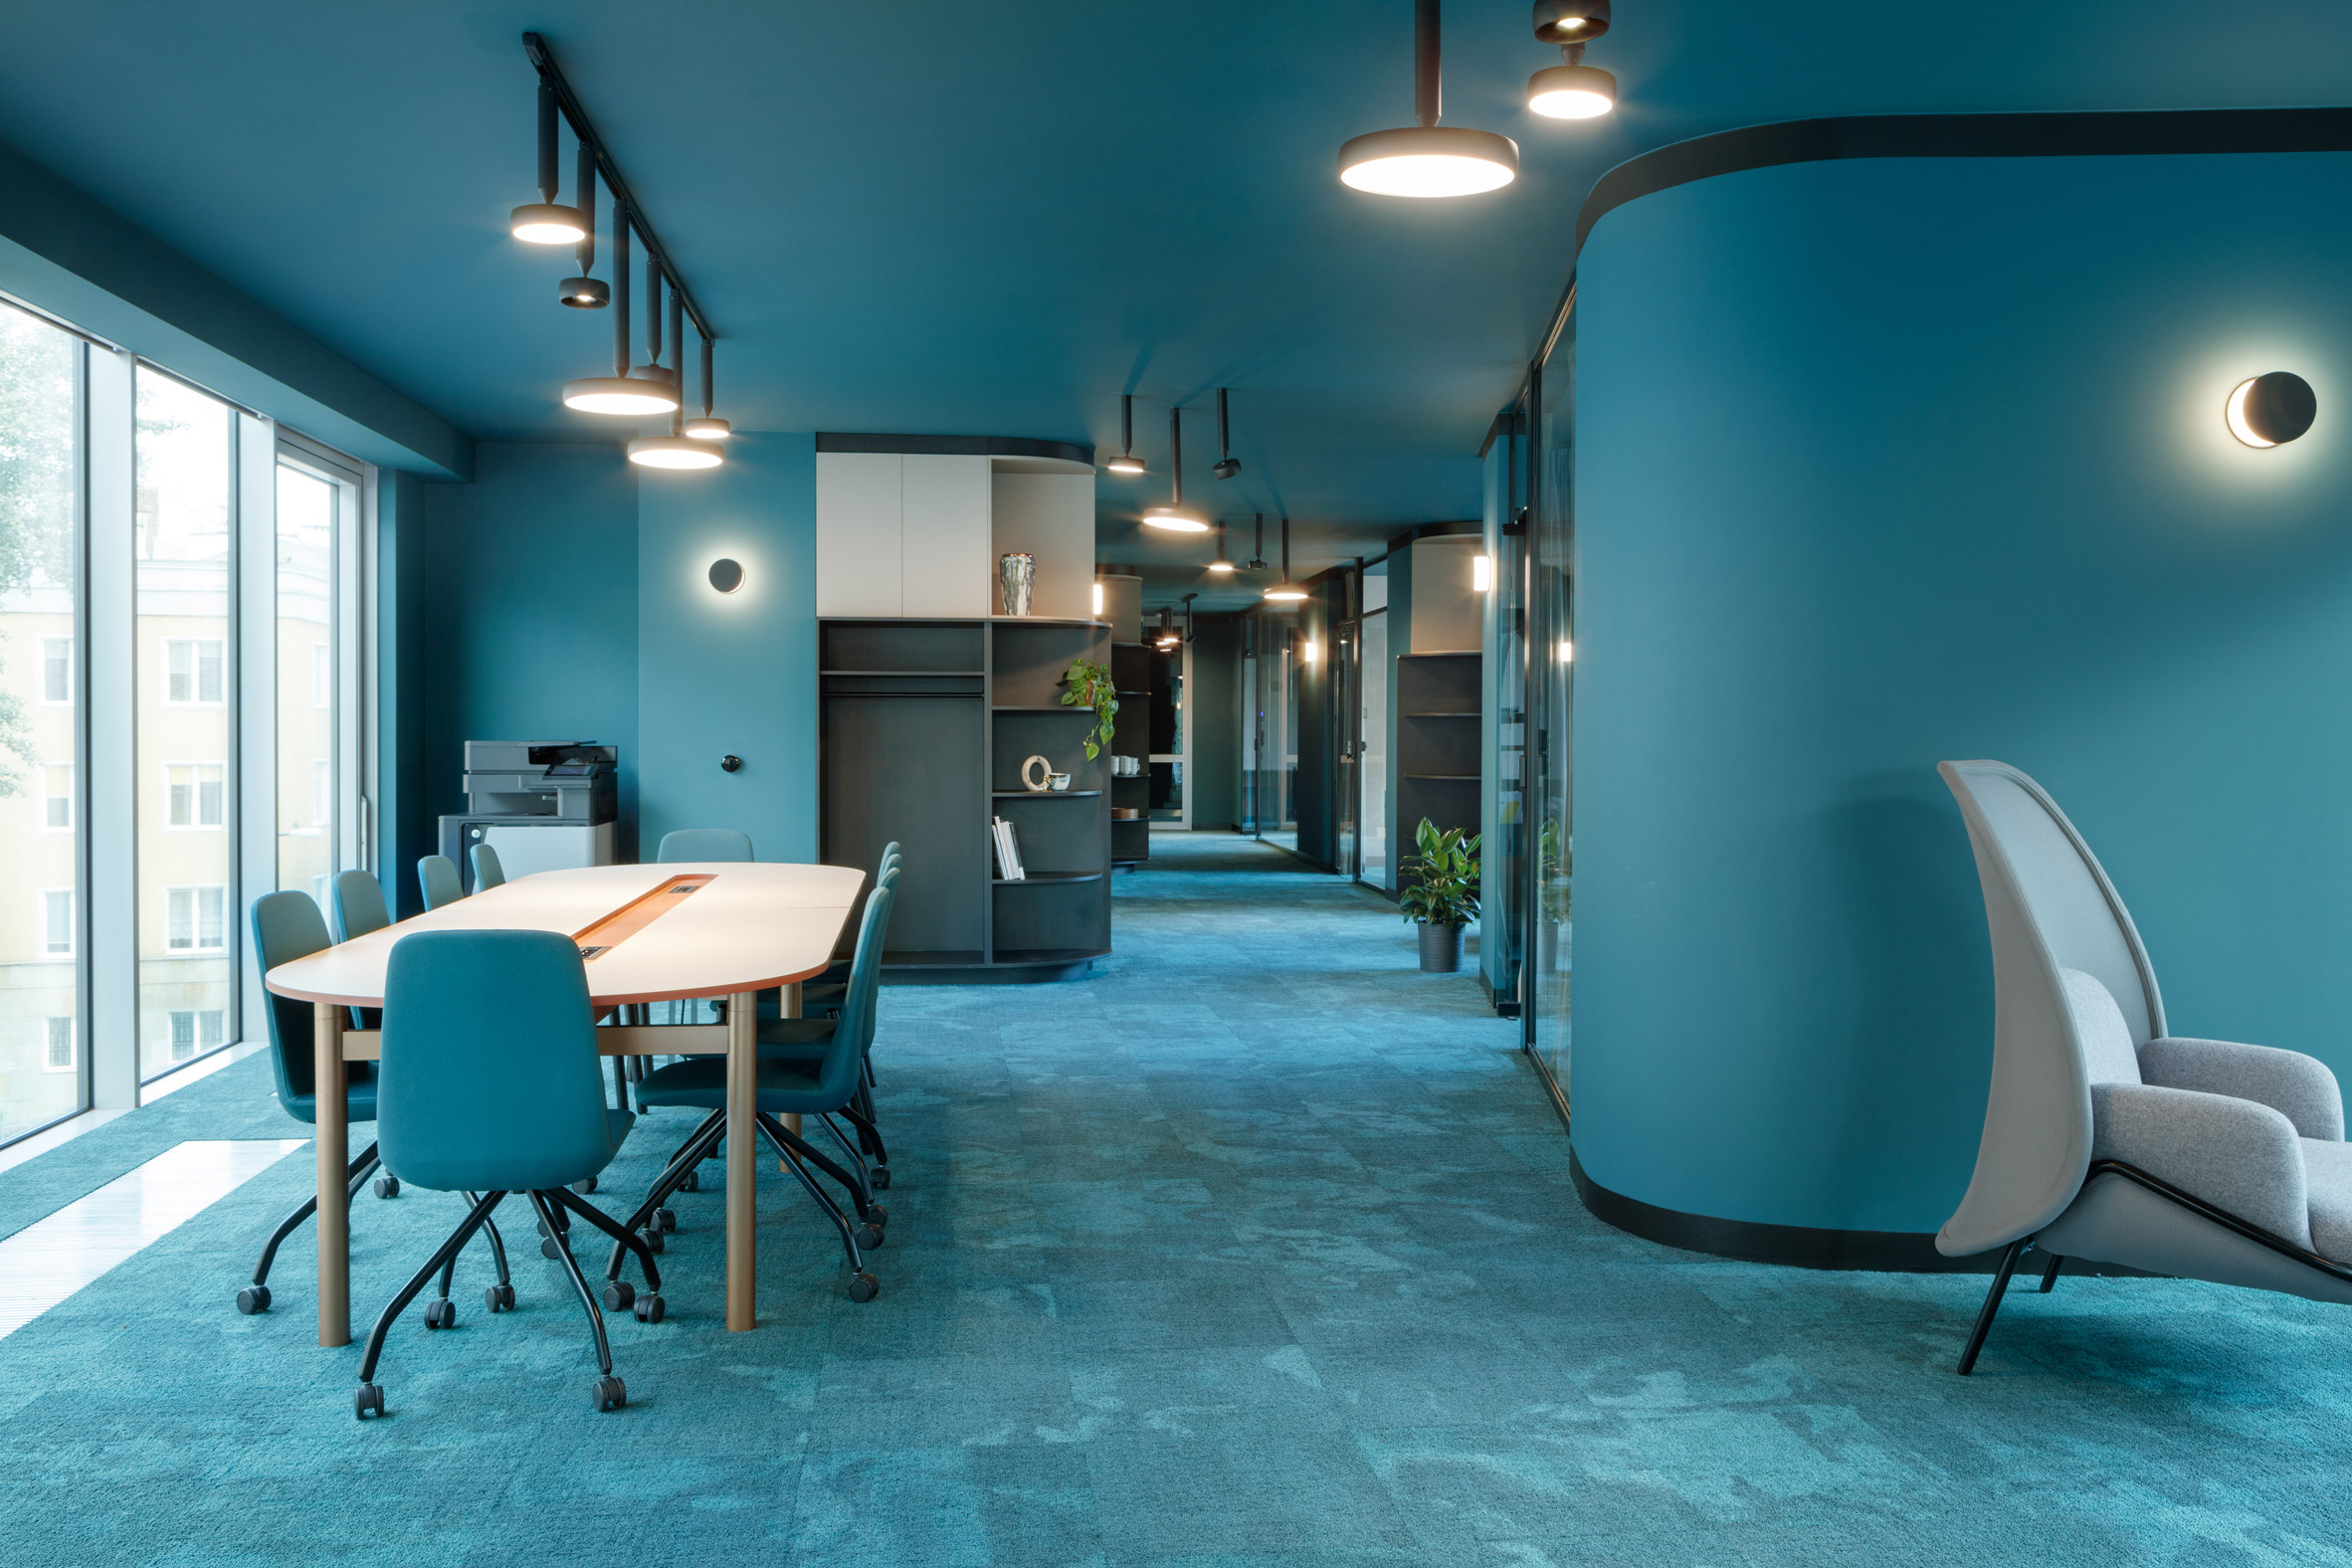 Hall office краска. Beza Projekt: зеленый офис в Варшаве. Интерьер офиса. Офис в голубых тонах. Красивый цвет стен в офисе.